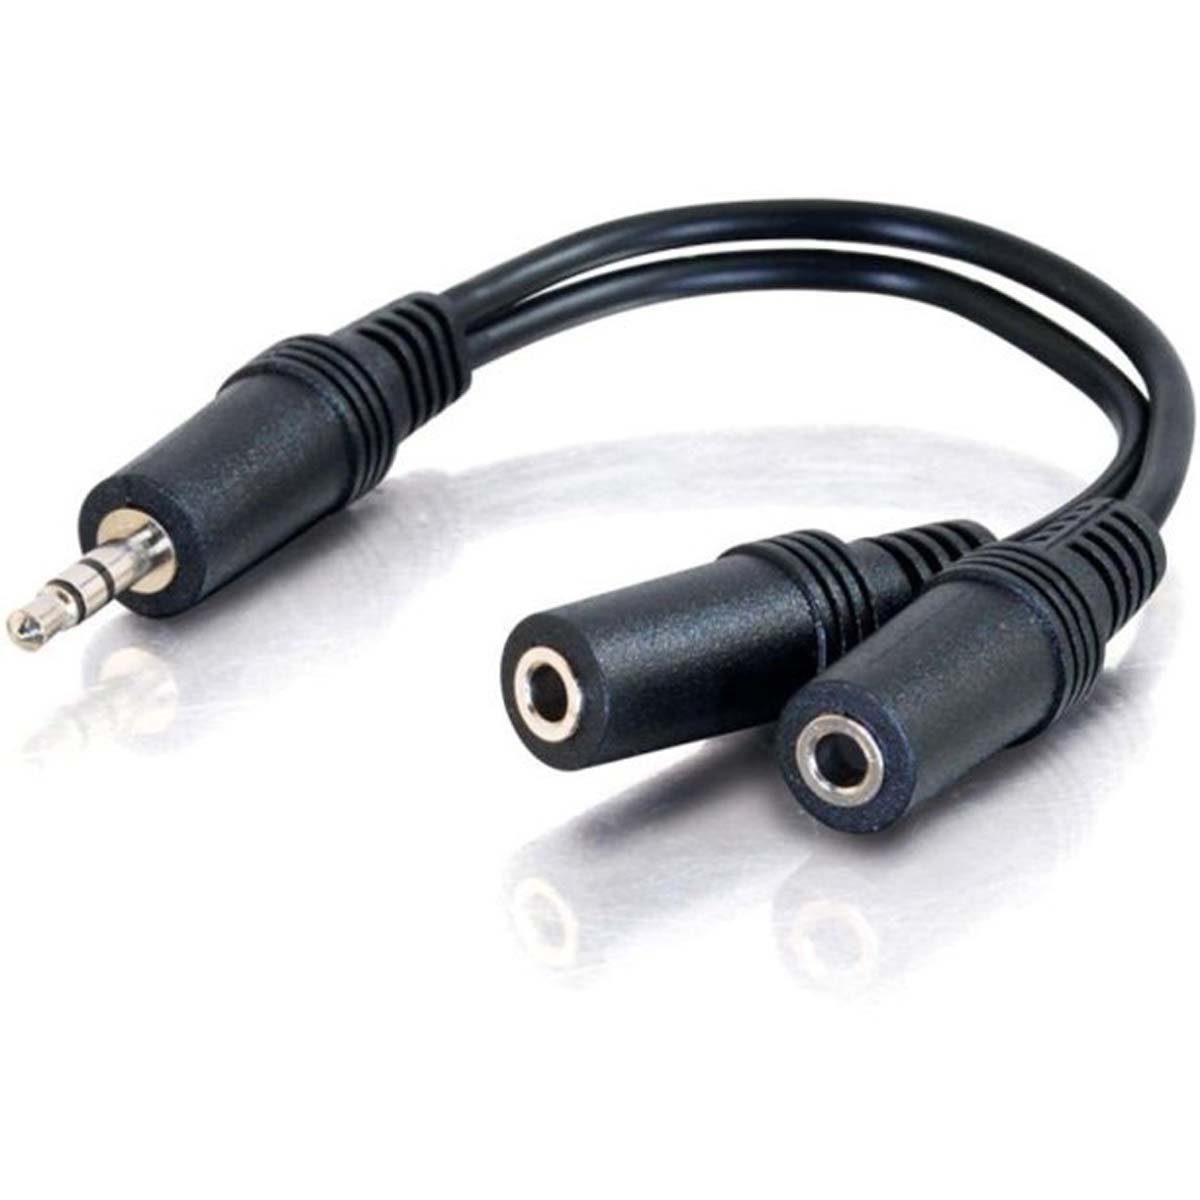 Vivanco Audio- & Video-Kabel, Adapter, Klinken Adapter (20 cm)